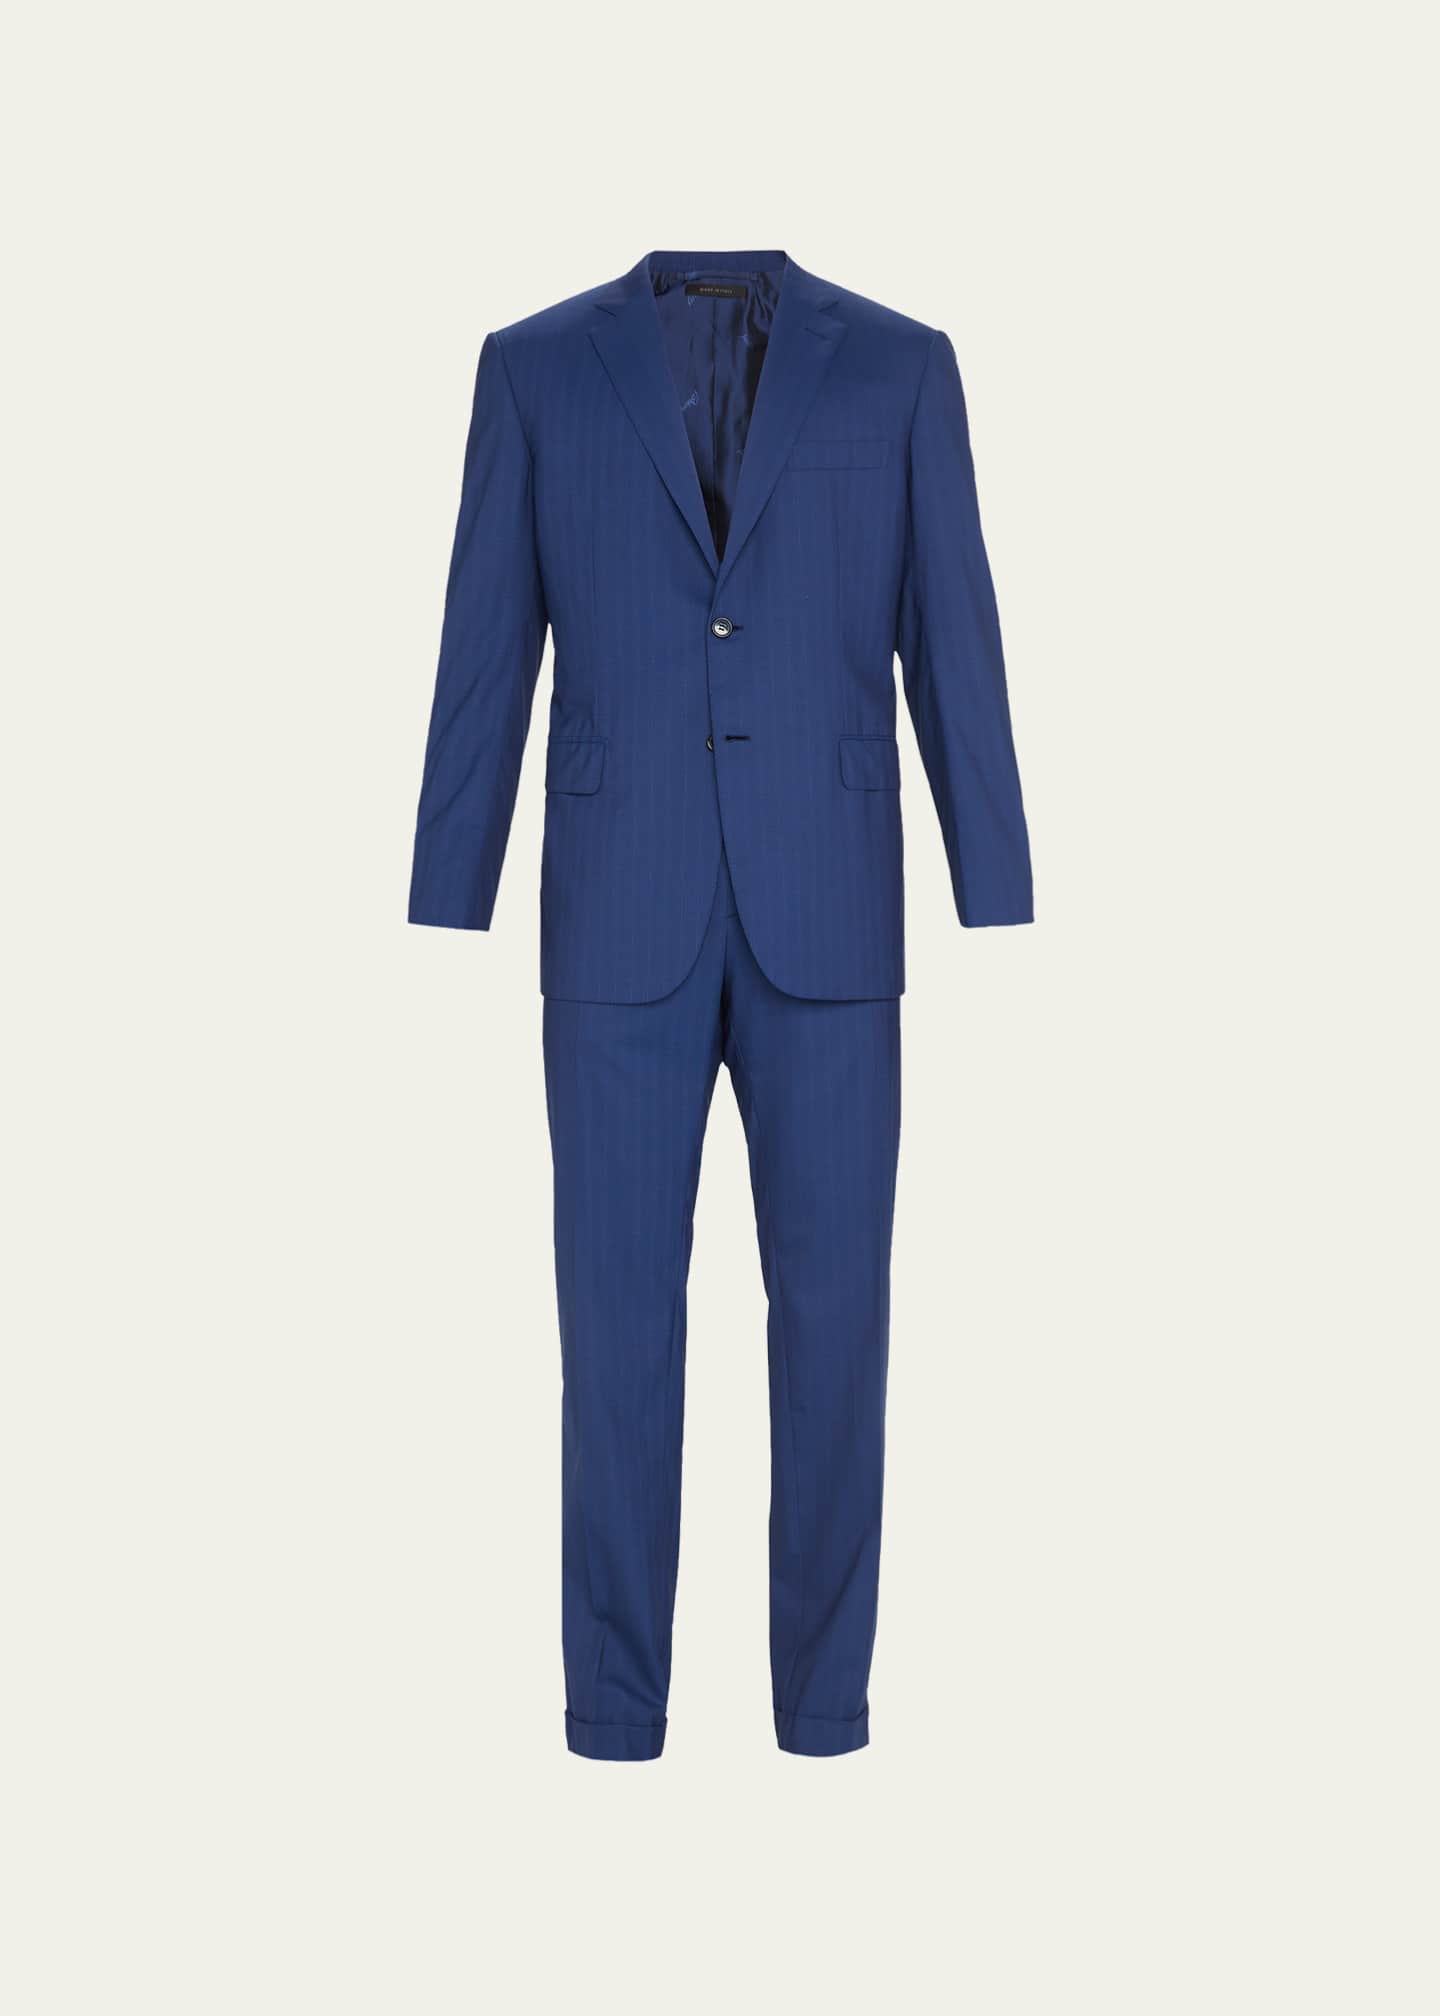 Brioni Men's Tonal Stripe Wool Suit - Bergdorf Goodman